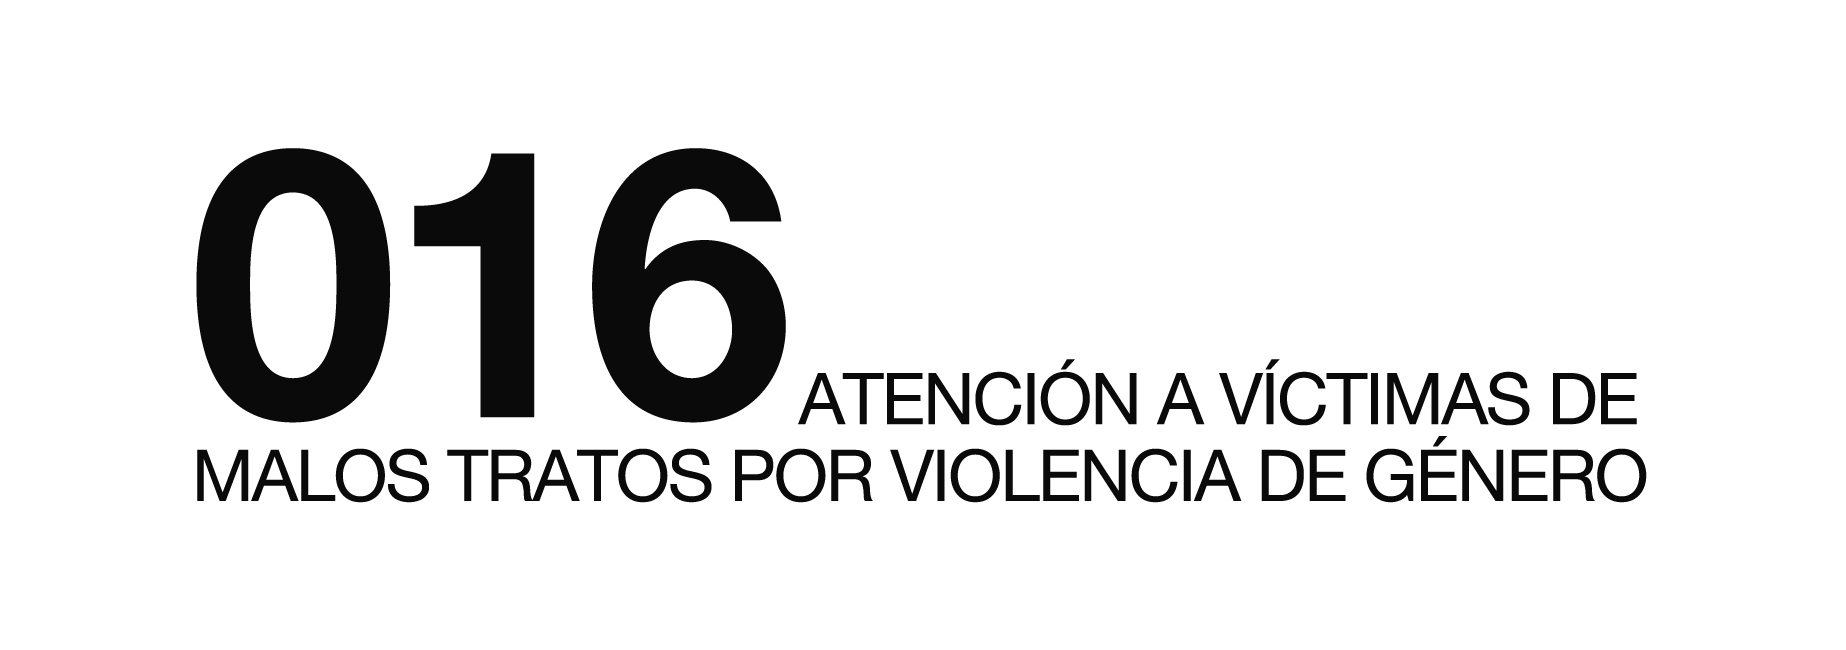 016. Atención a víctimas de malos tratos por violencia de género.